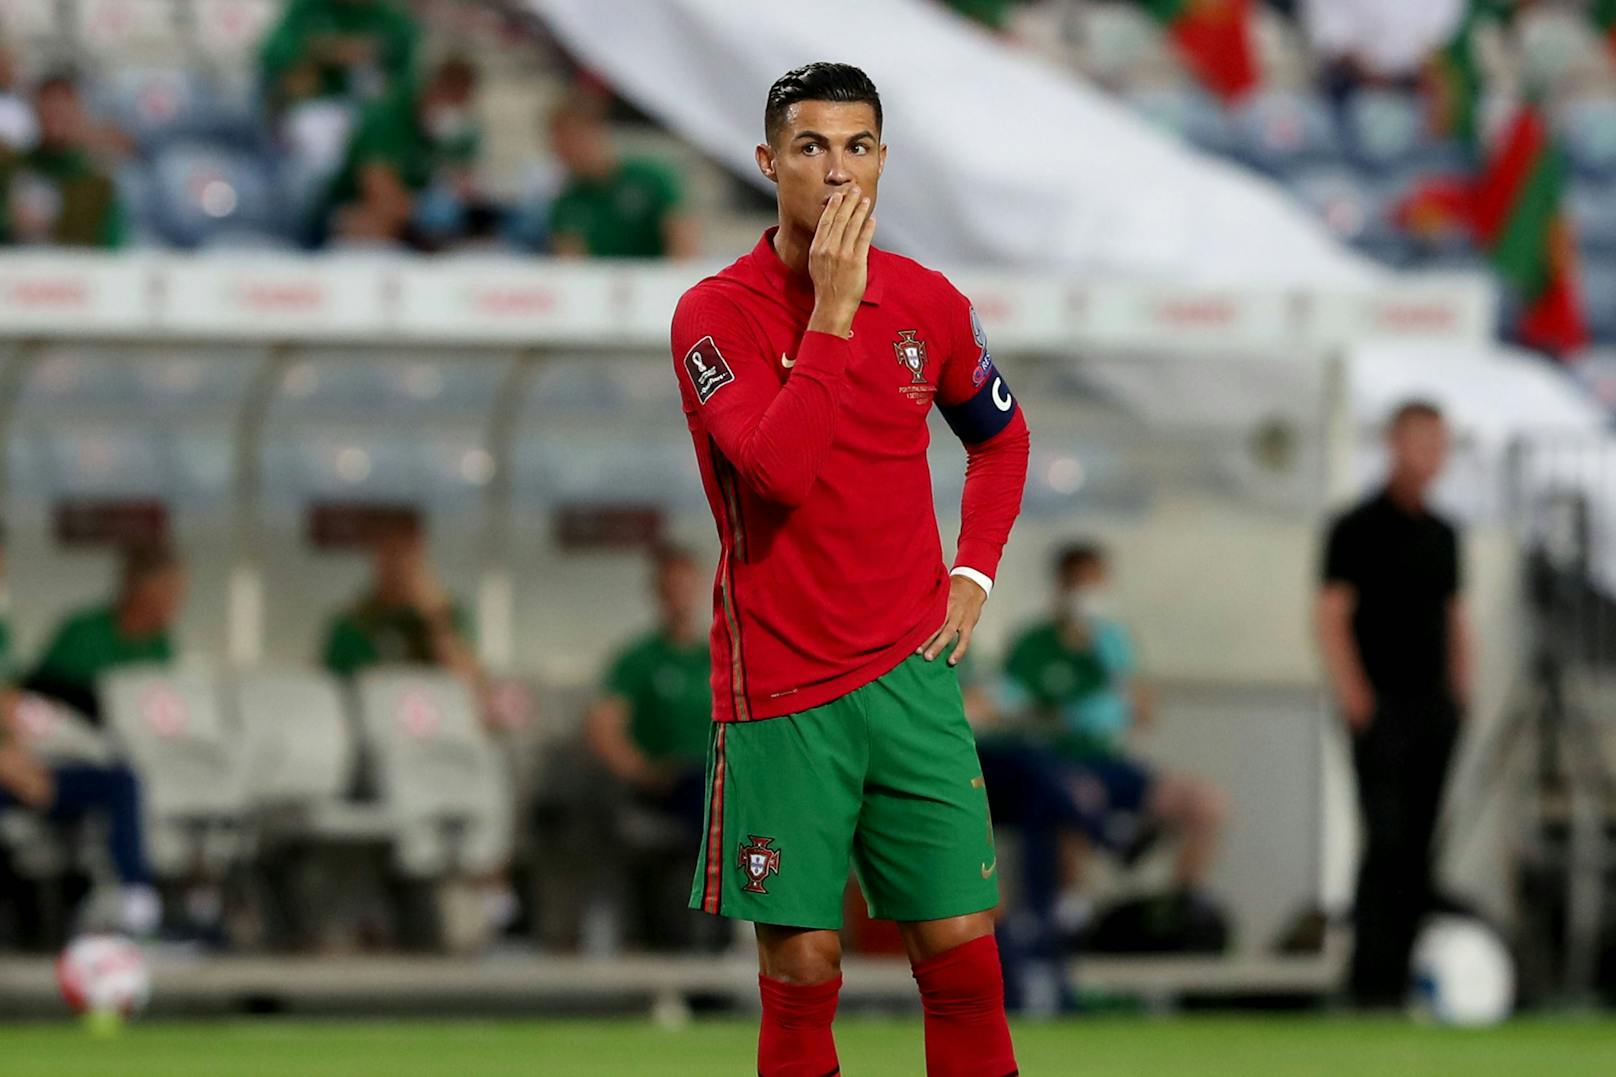 Sonder-Behandlung? Kein Ronaldo-Rot nach Tätlichkeit